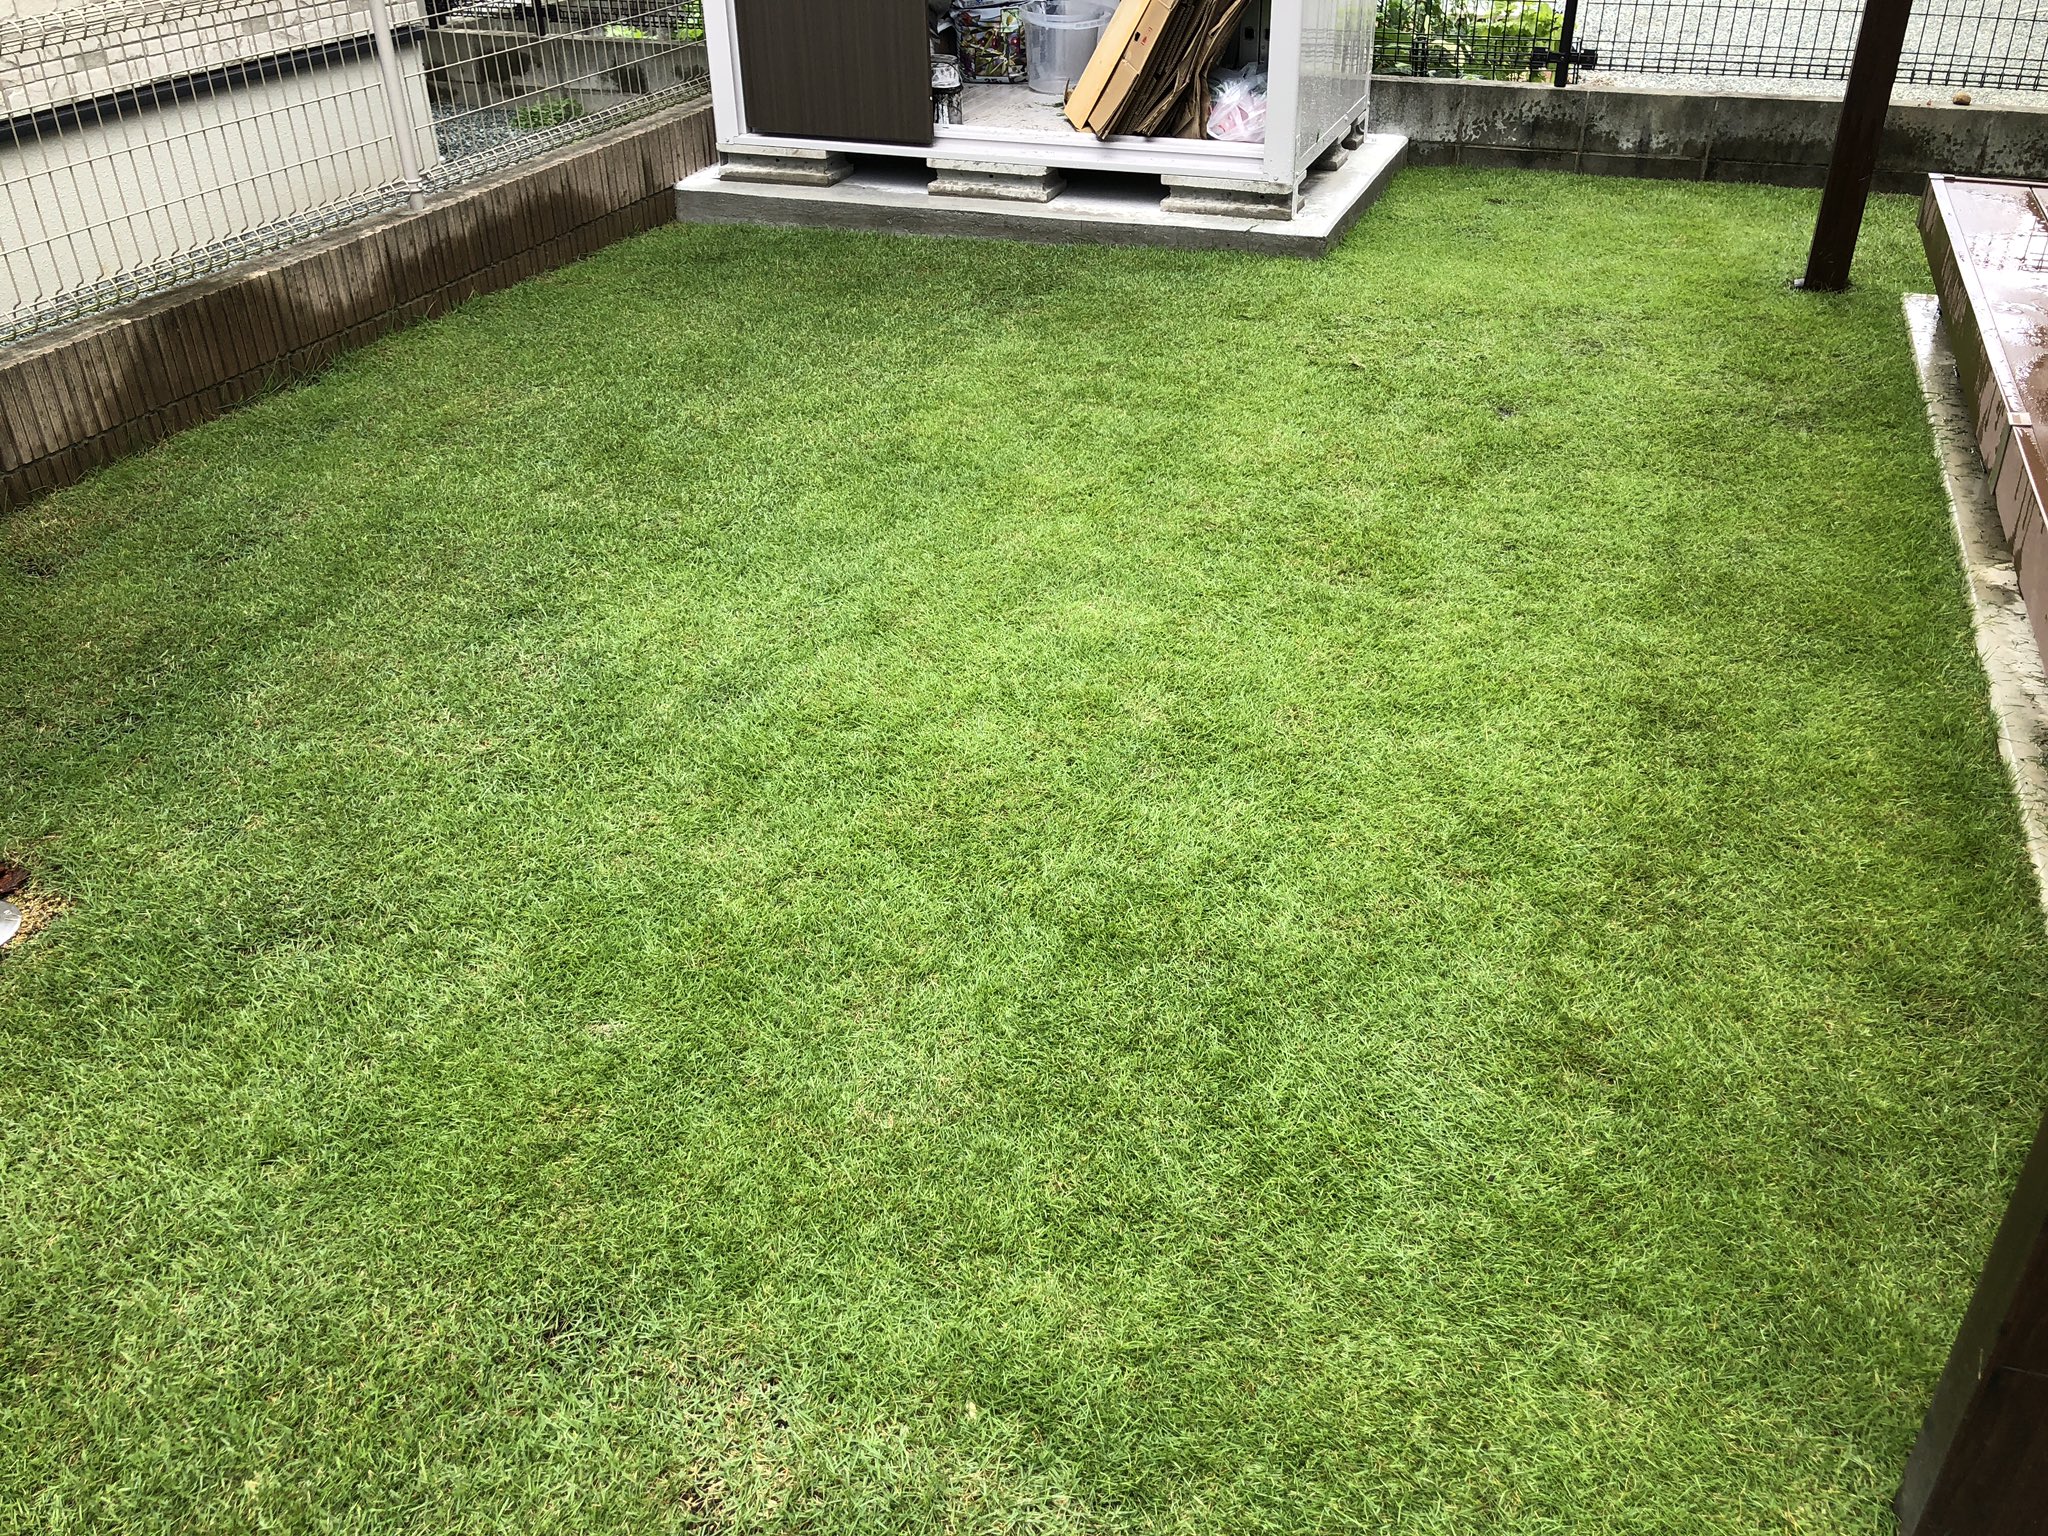 かずひろ 梅雨の合間の芝刈り完了 先週のラージパッチも殺菌剤の効果でほぼ回復 芝生 芝刈り ラージパッチ 姫高麗芝 T Co 0ihu2p8o3g Twitter